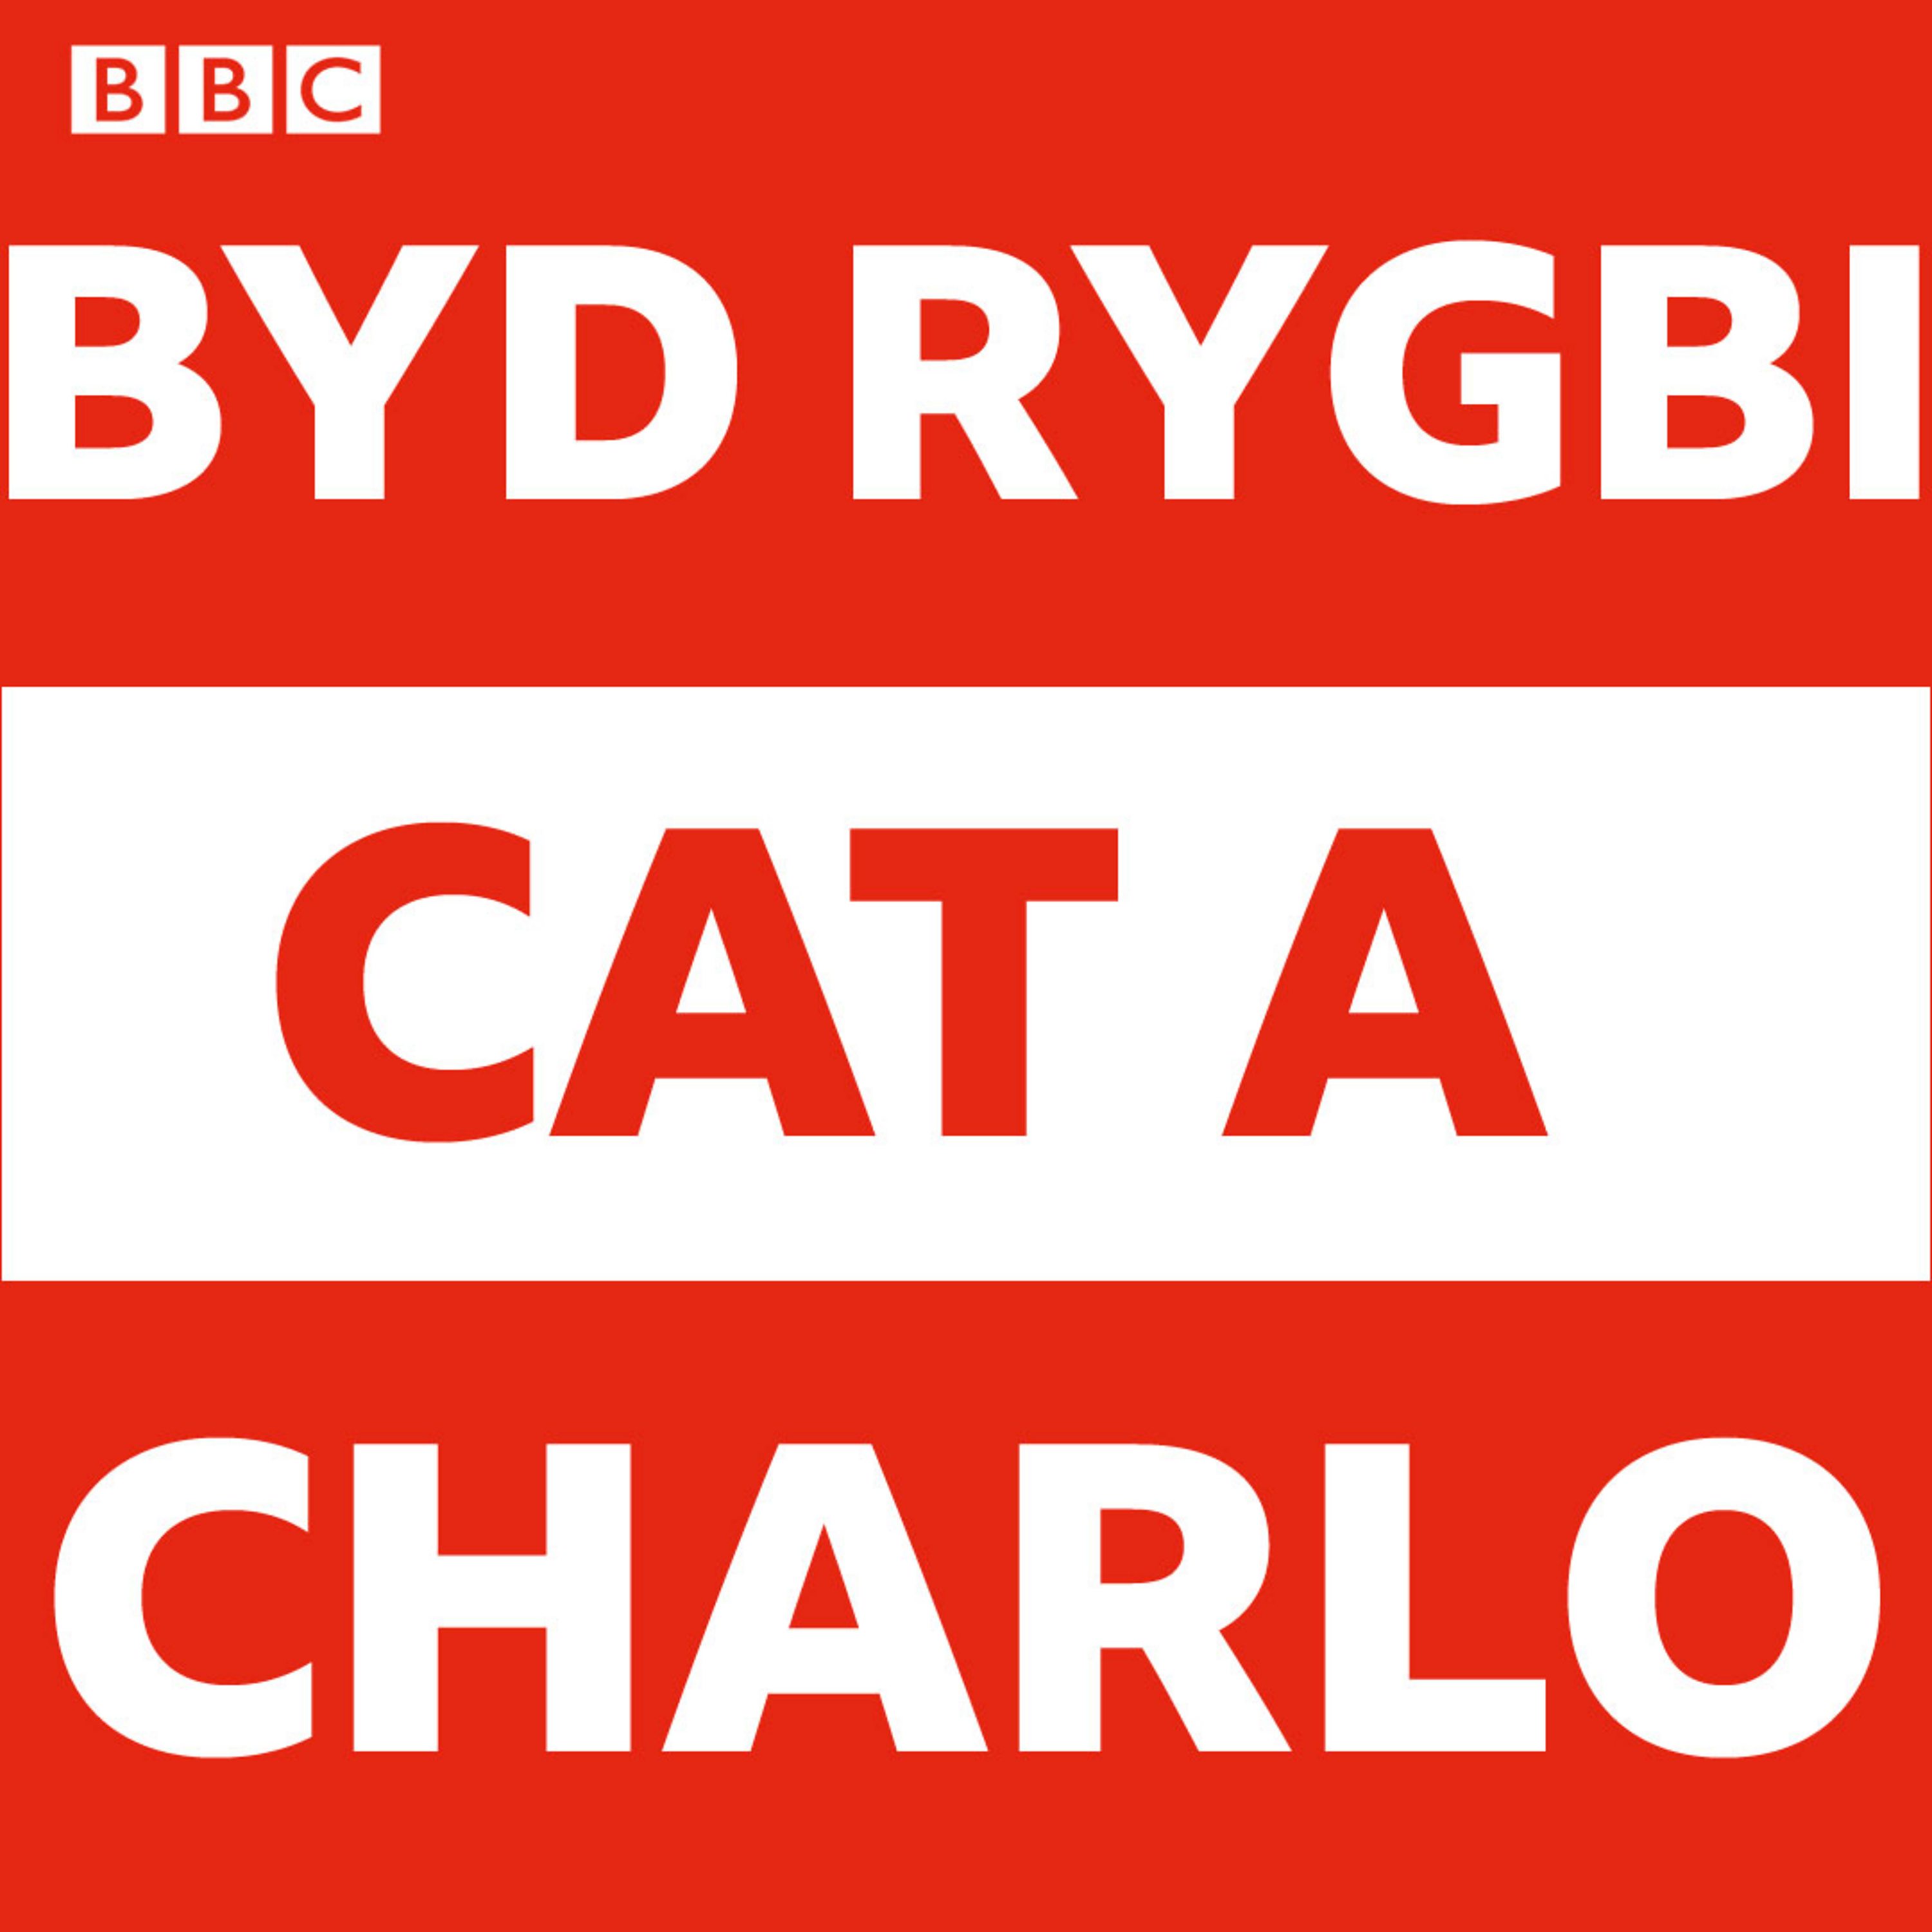 Byd Rygbi Cat a Charlo